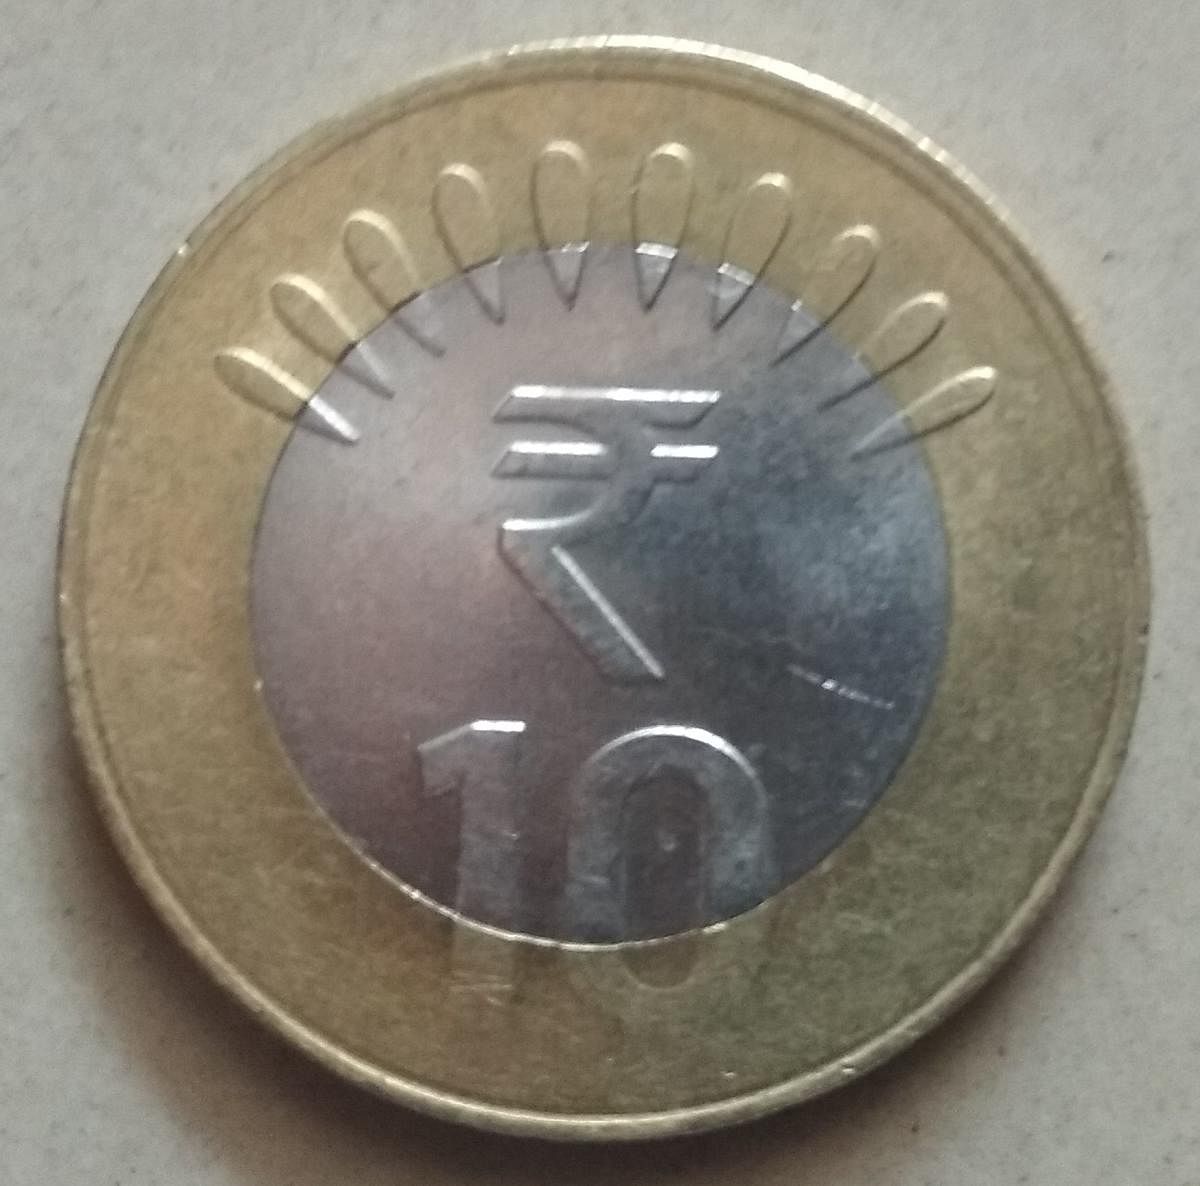 ₹ 10 ಮುಖಬೆಲೆಯ ನಾಣ್ಯ